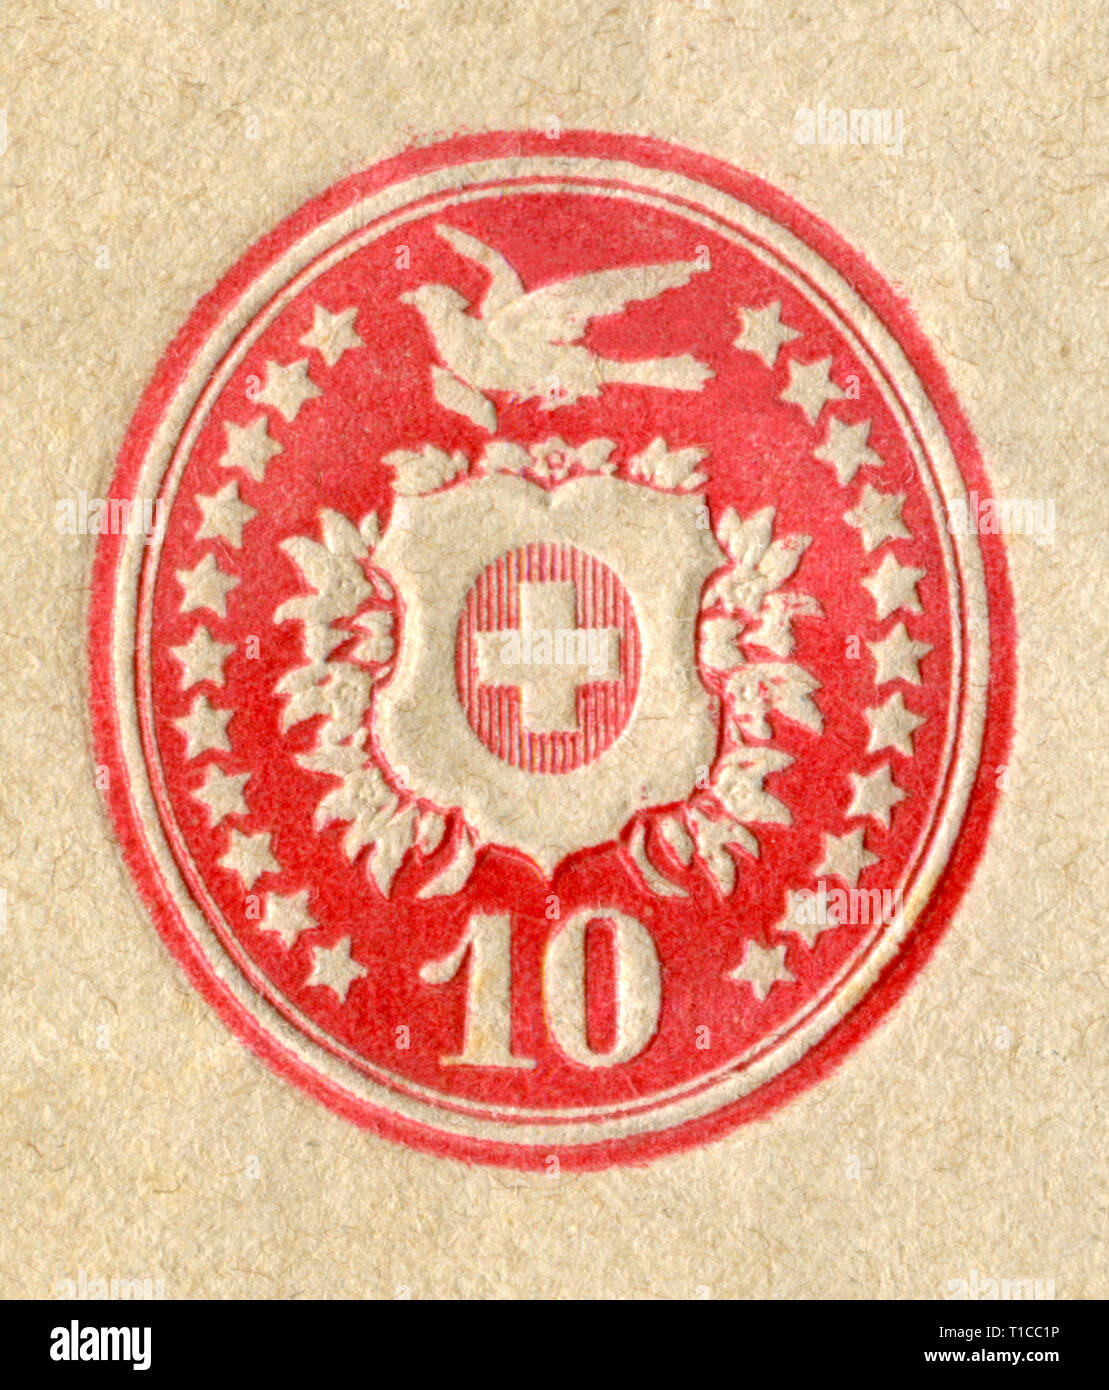 Schweizer historischen Stempel - Vignette: die Taube trägt einen Brief, ein  Kreuz auf die heraldische Schild, Sterne, Nennwert, Dezember 1878, Schweiz  Stockfotografie - Alamy